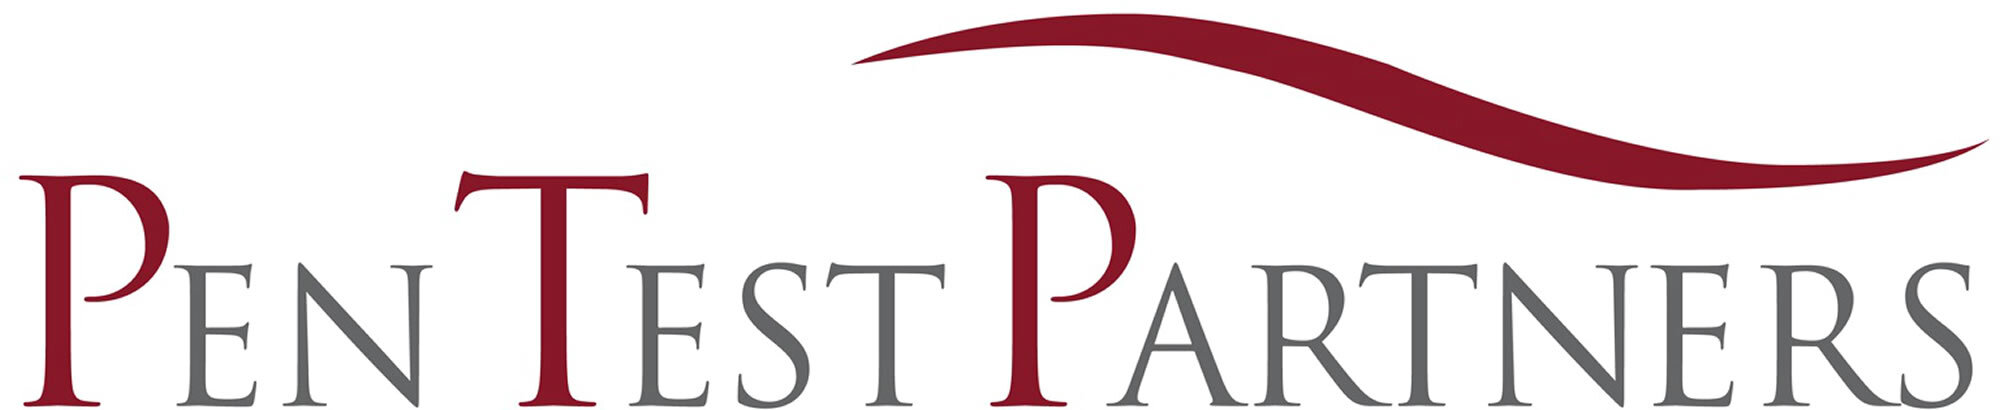 PTP-logo-2000x410.jpg